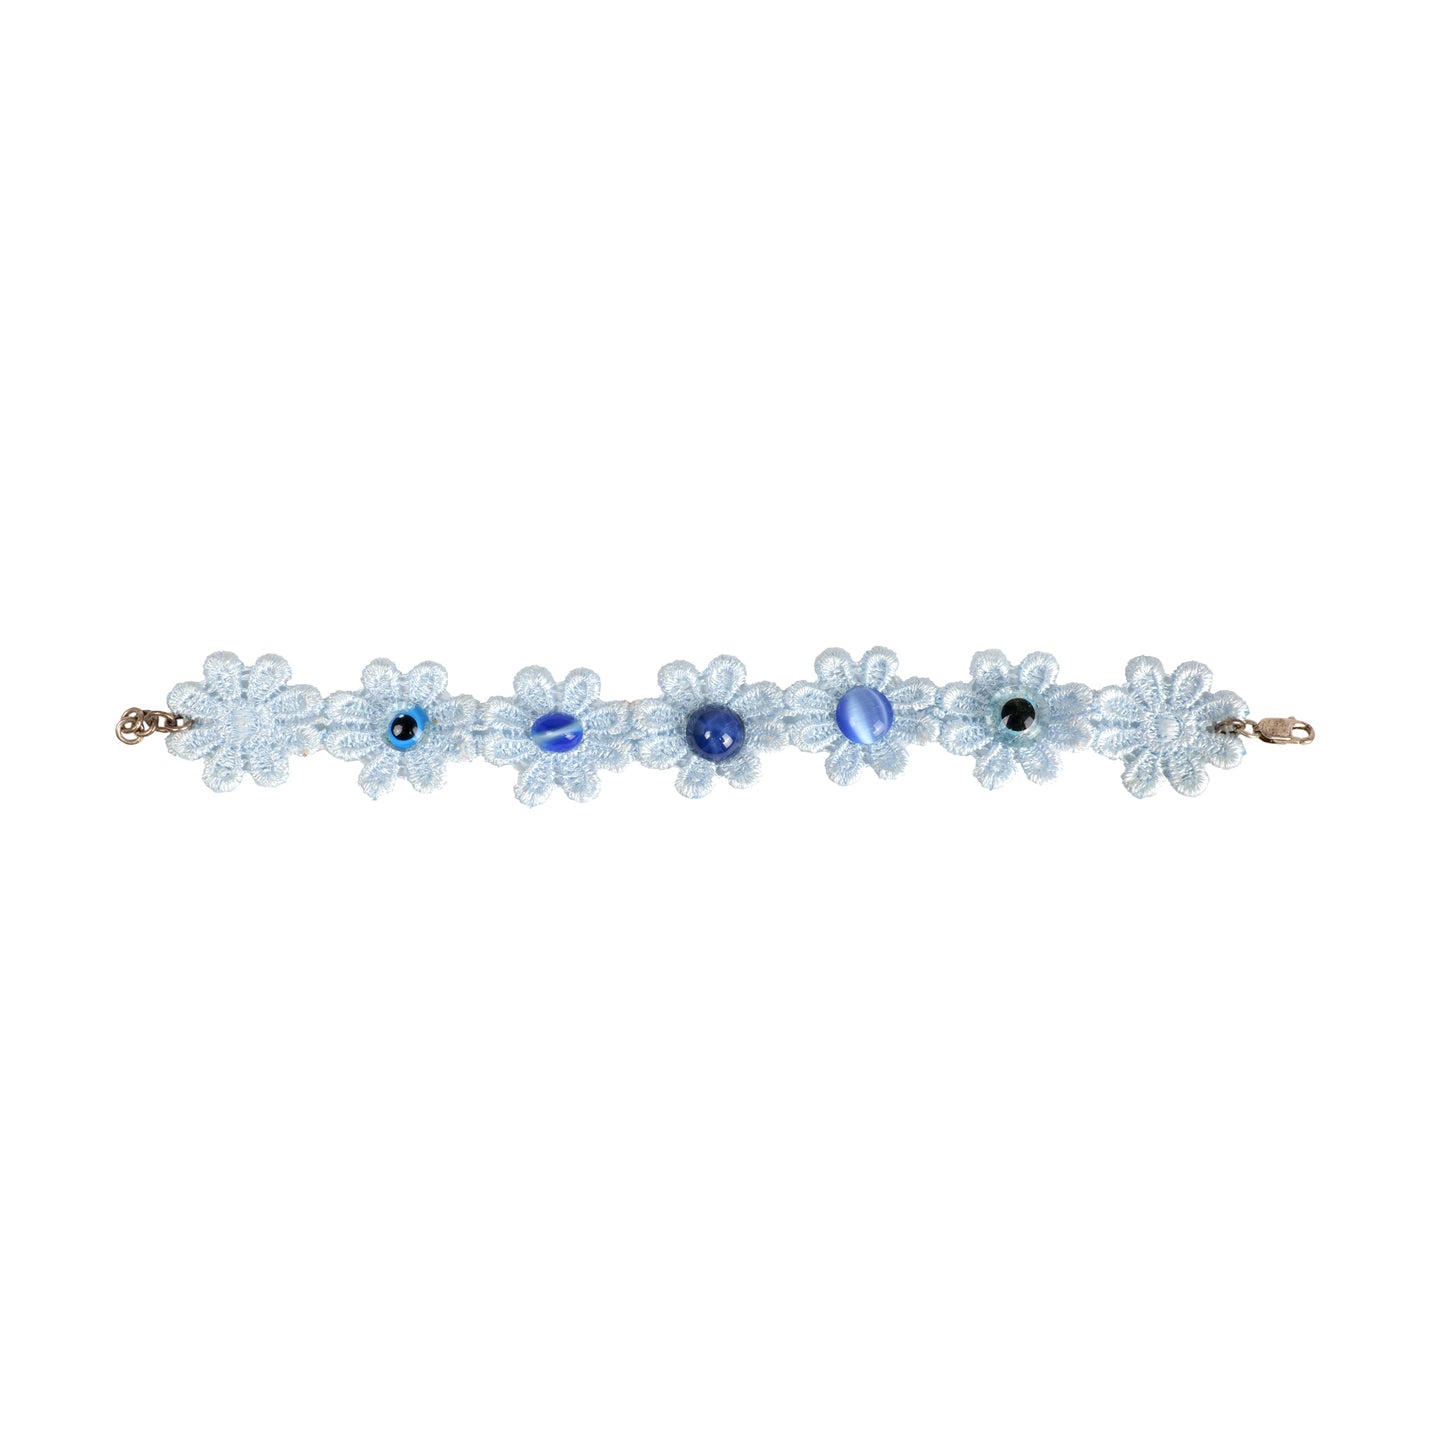 Cotton Light Blue Bracelet With Navy Stone